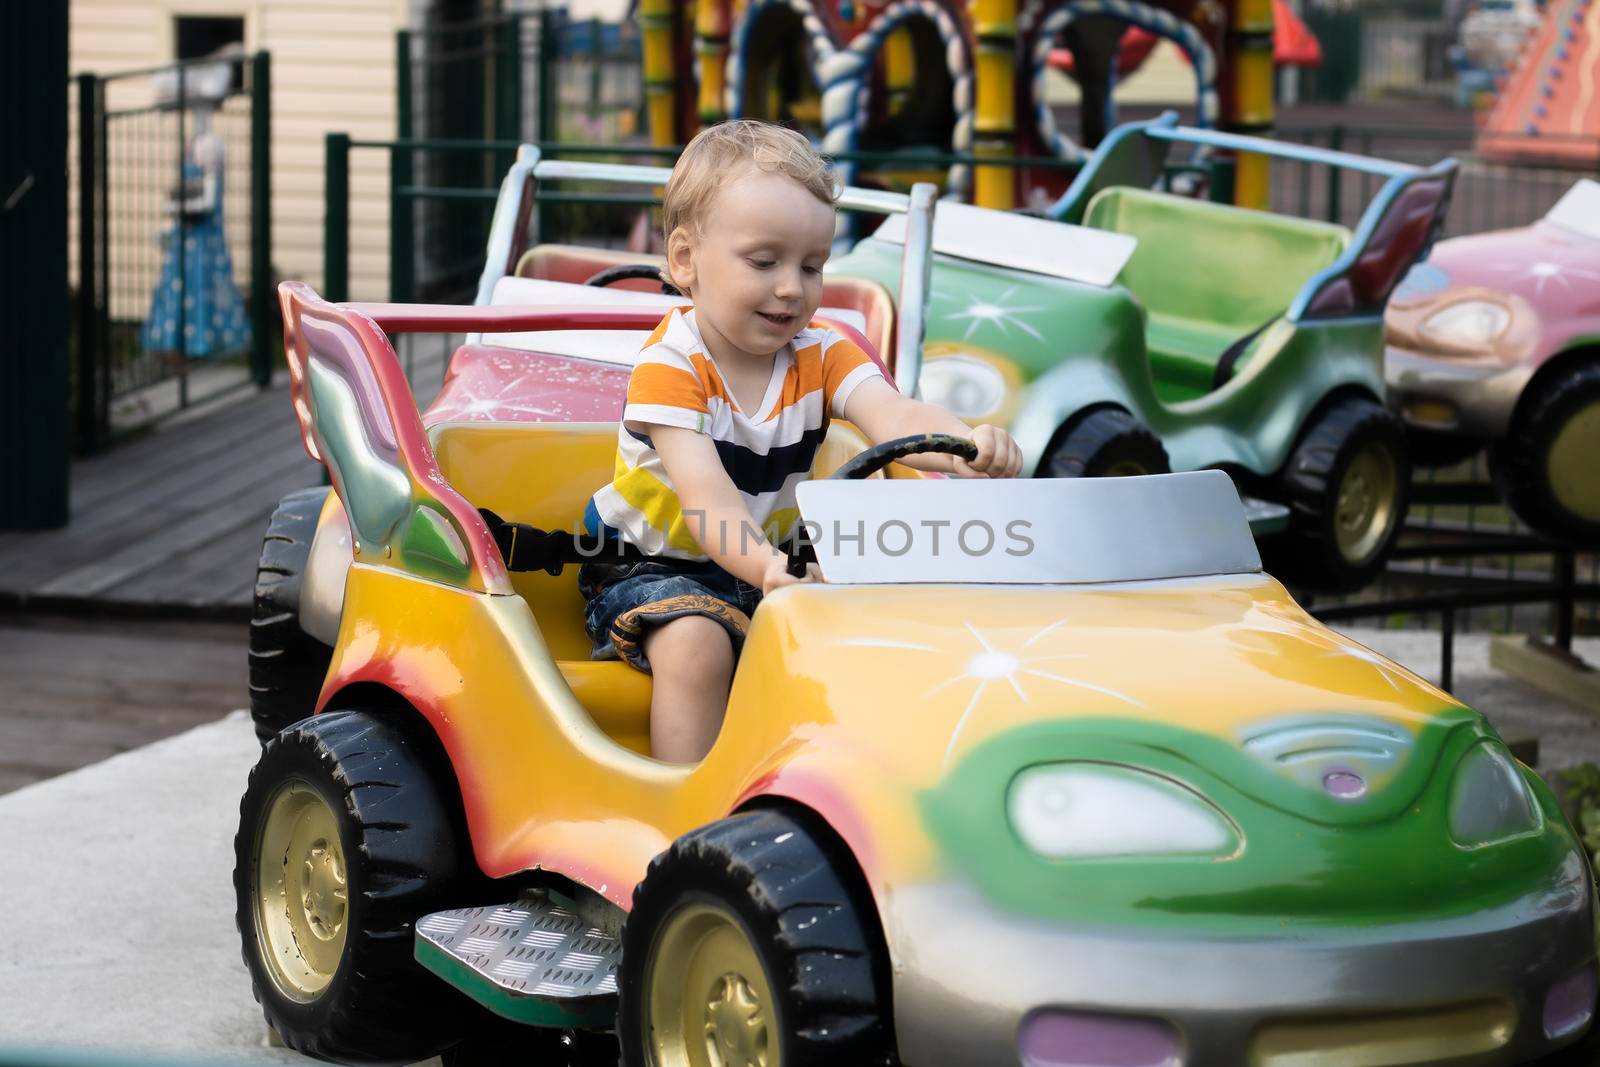 A child rides a car in the amusement park. by Sonluna